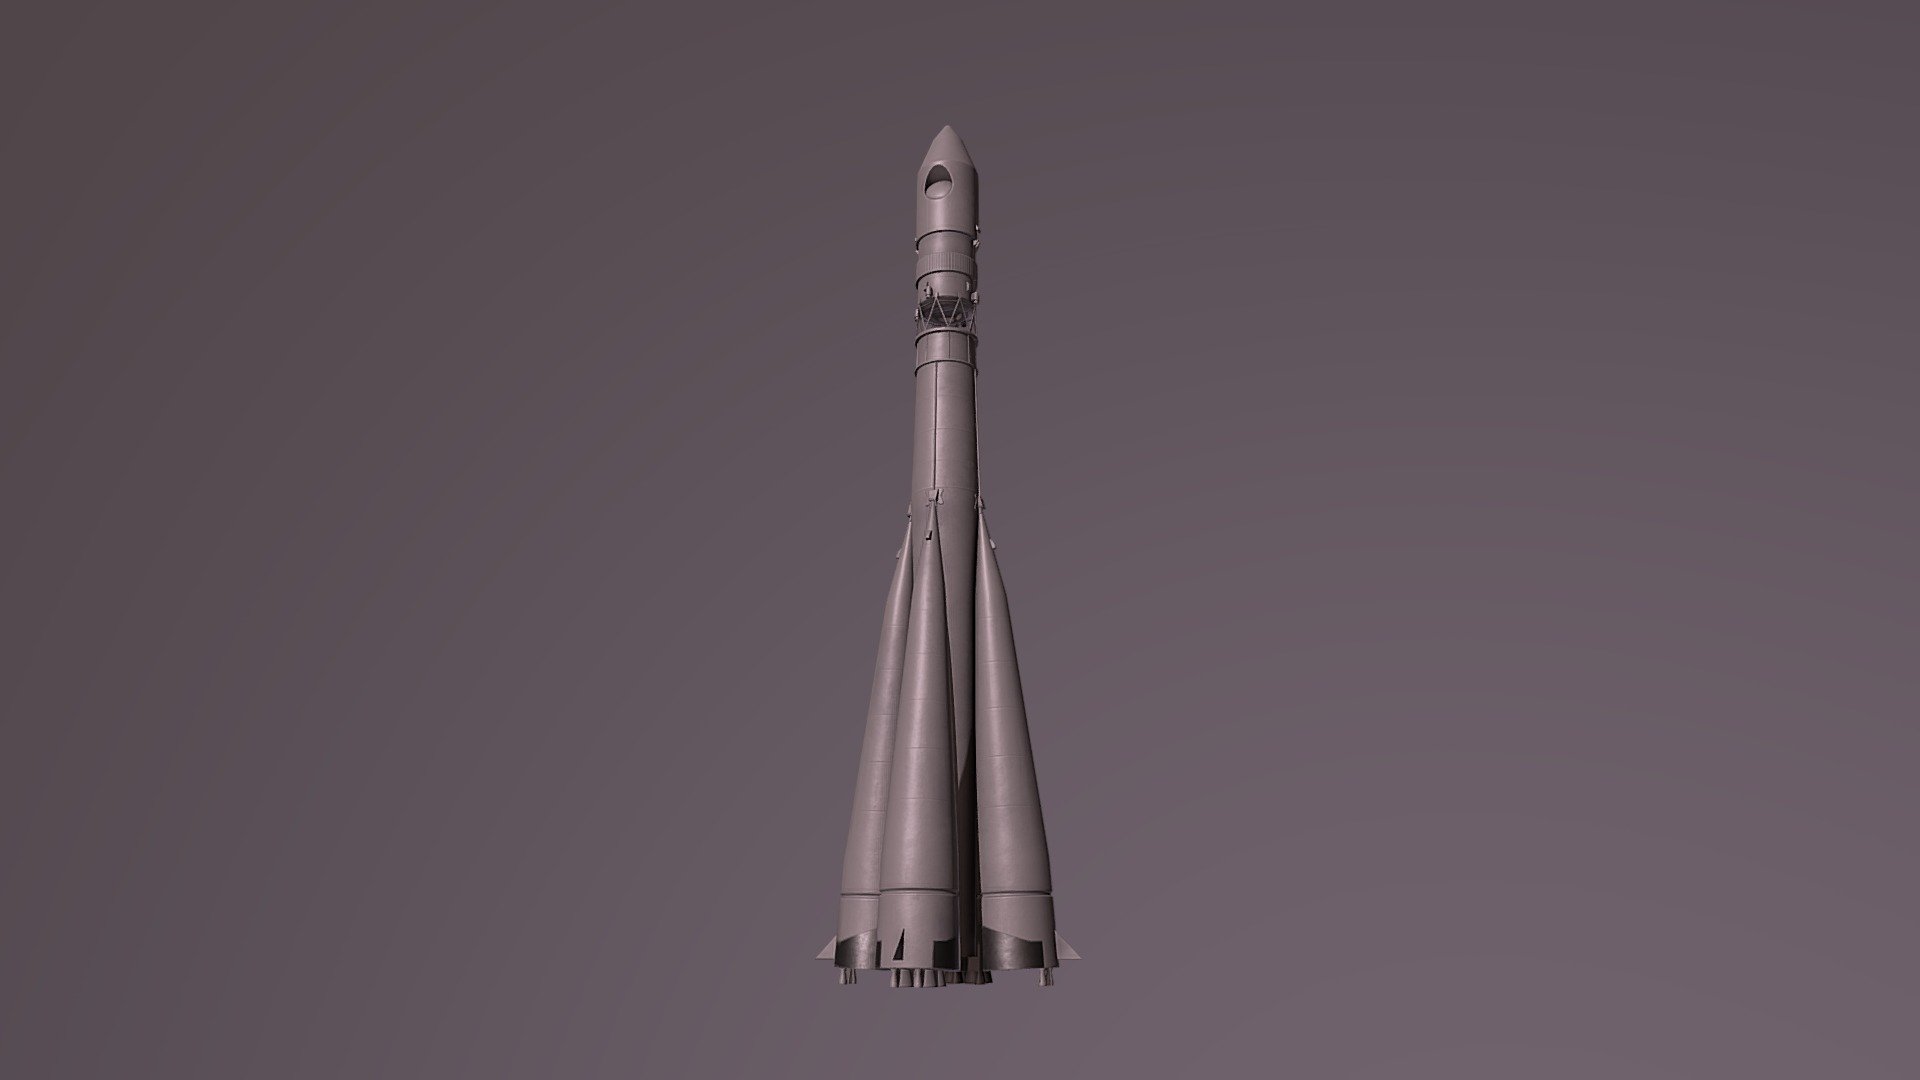 Rocket Vostok-1